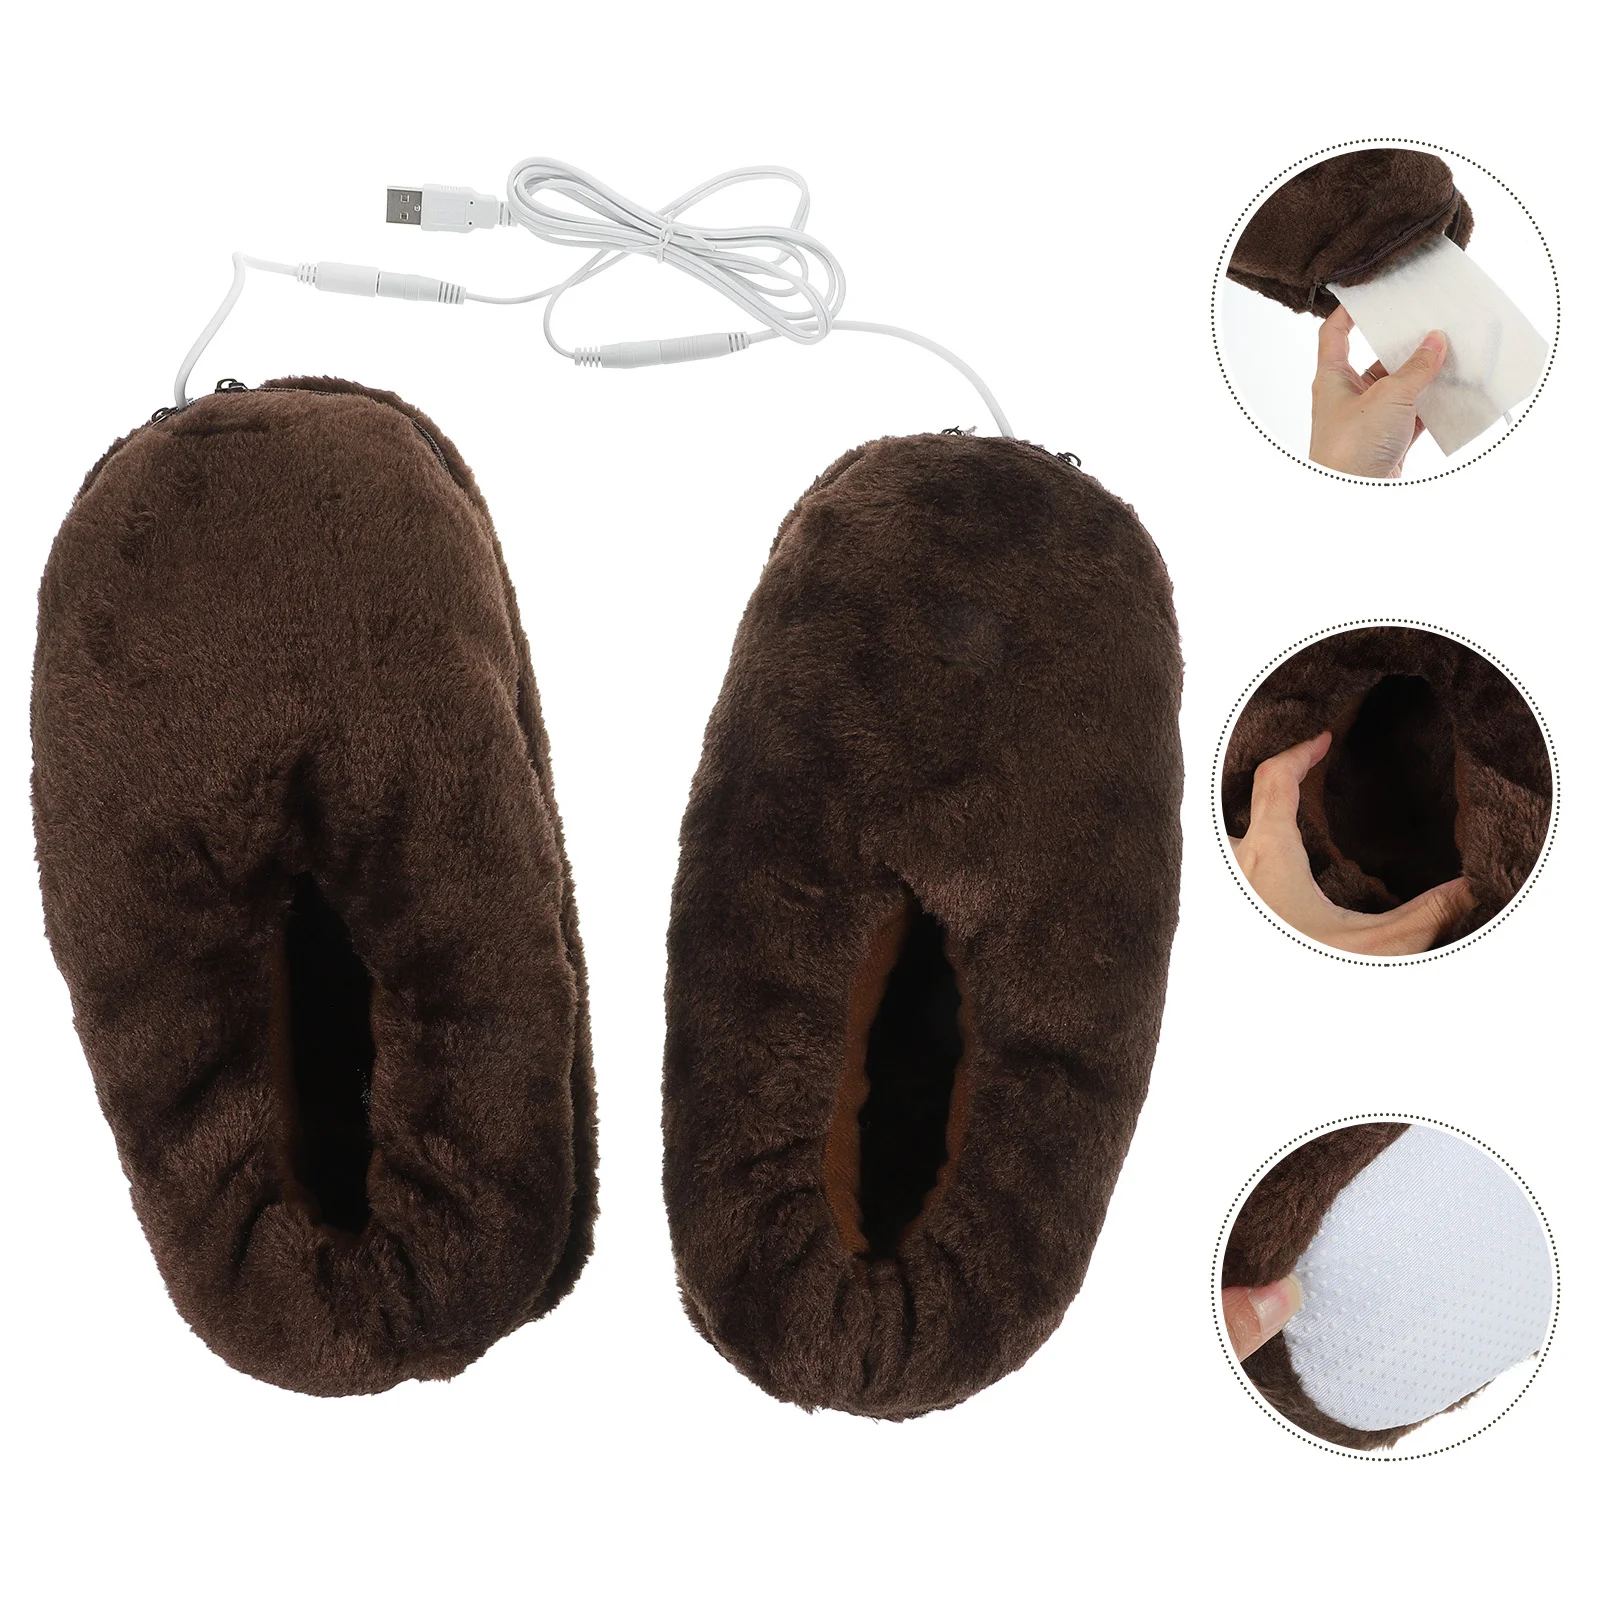 

1 пара теплых плюшевых тапочек с USB-подогревом, обувь с электрическим подогревом, зимняя обувь (кофе)